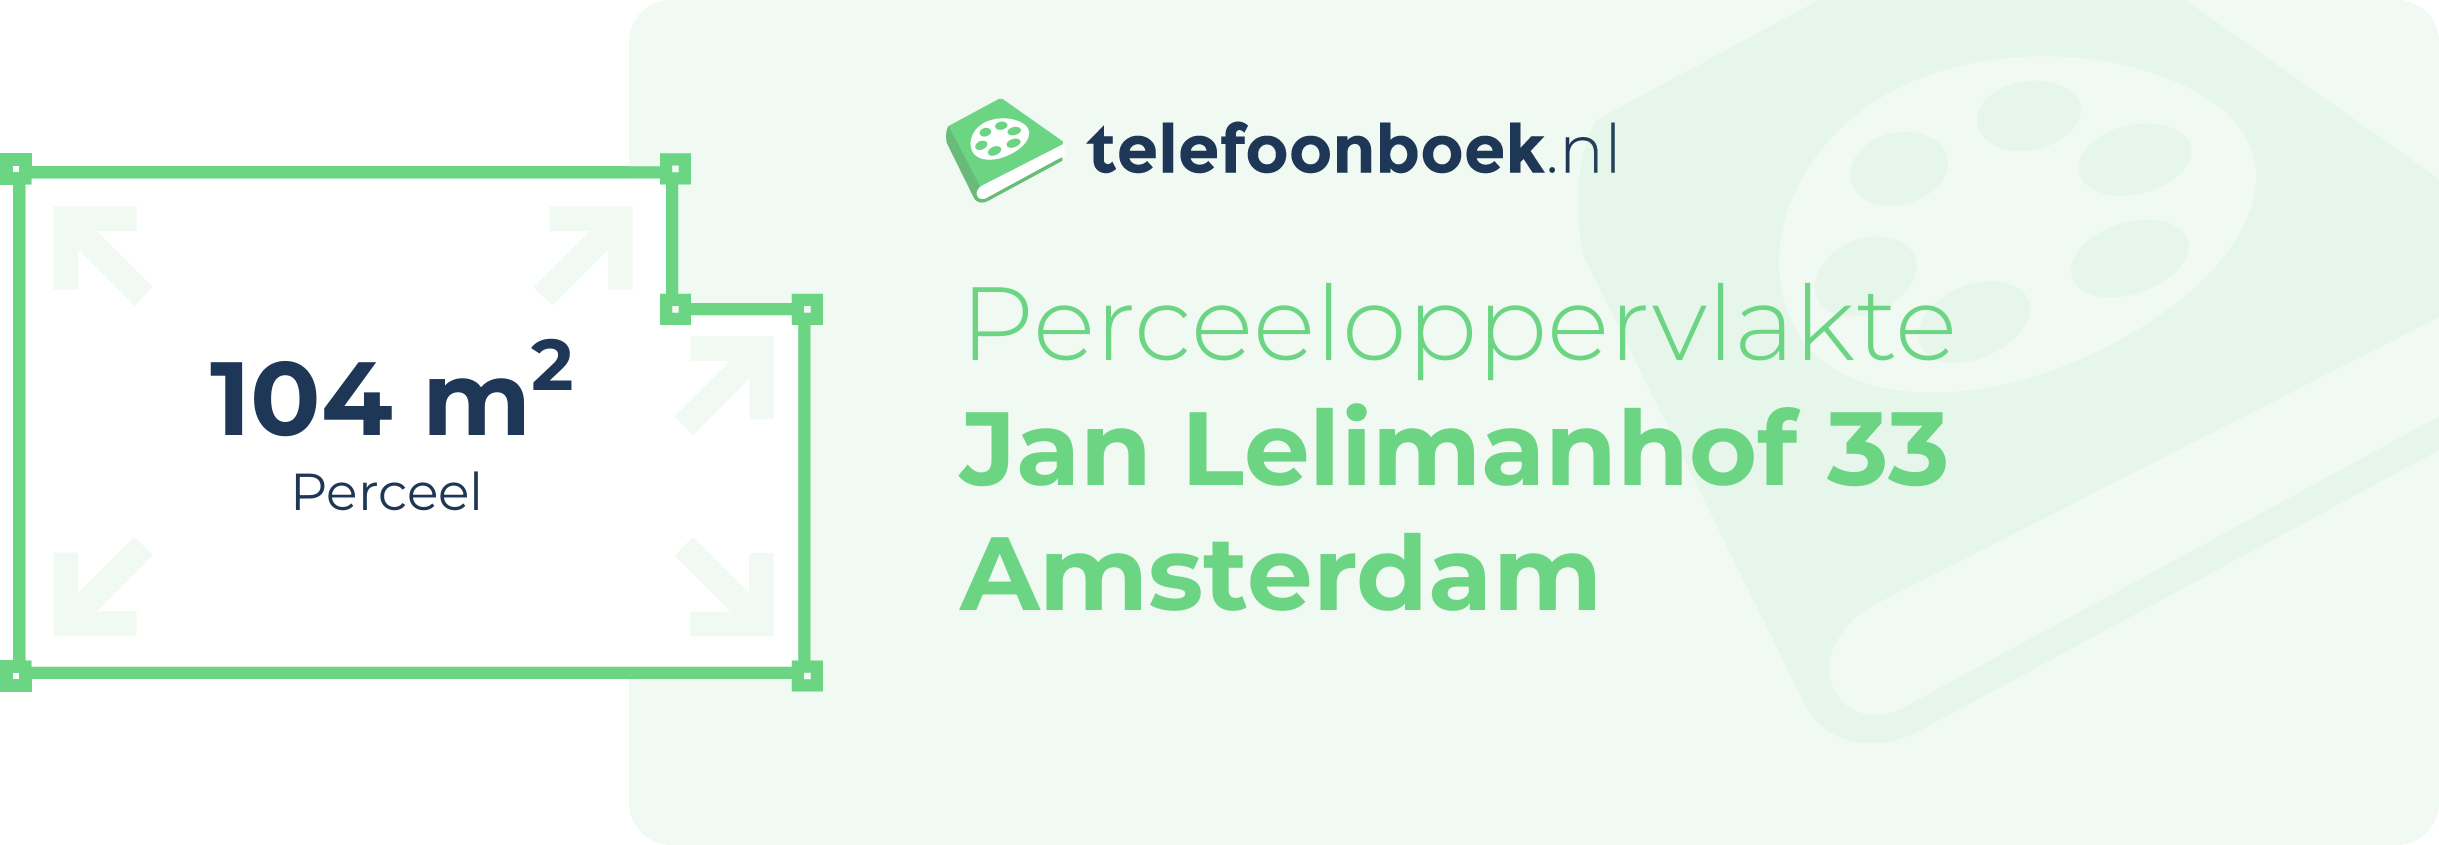 Perceeloppervlakte Jan Lelimanhof 33 Amsterdam